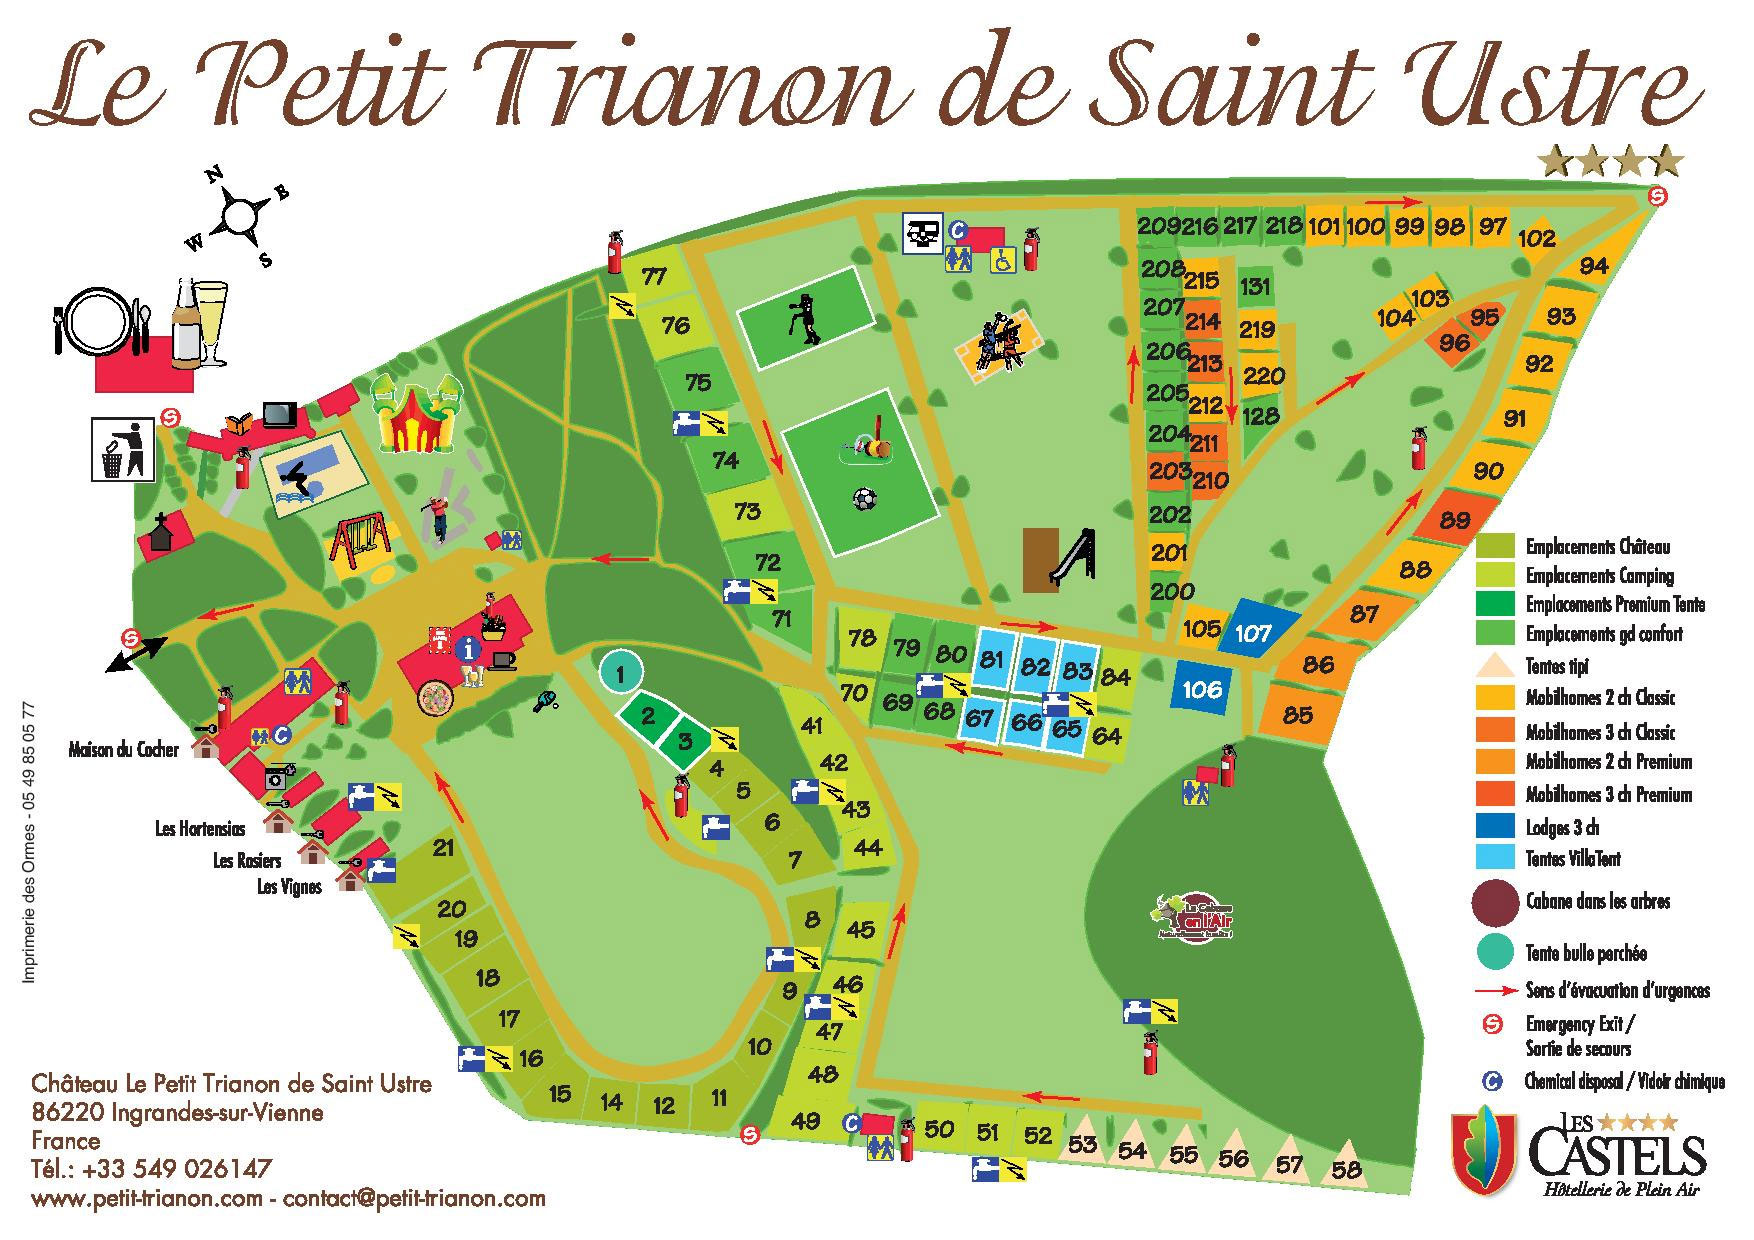 Plattegrond Le Petit Trianon de Saint Ustre